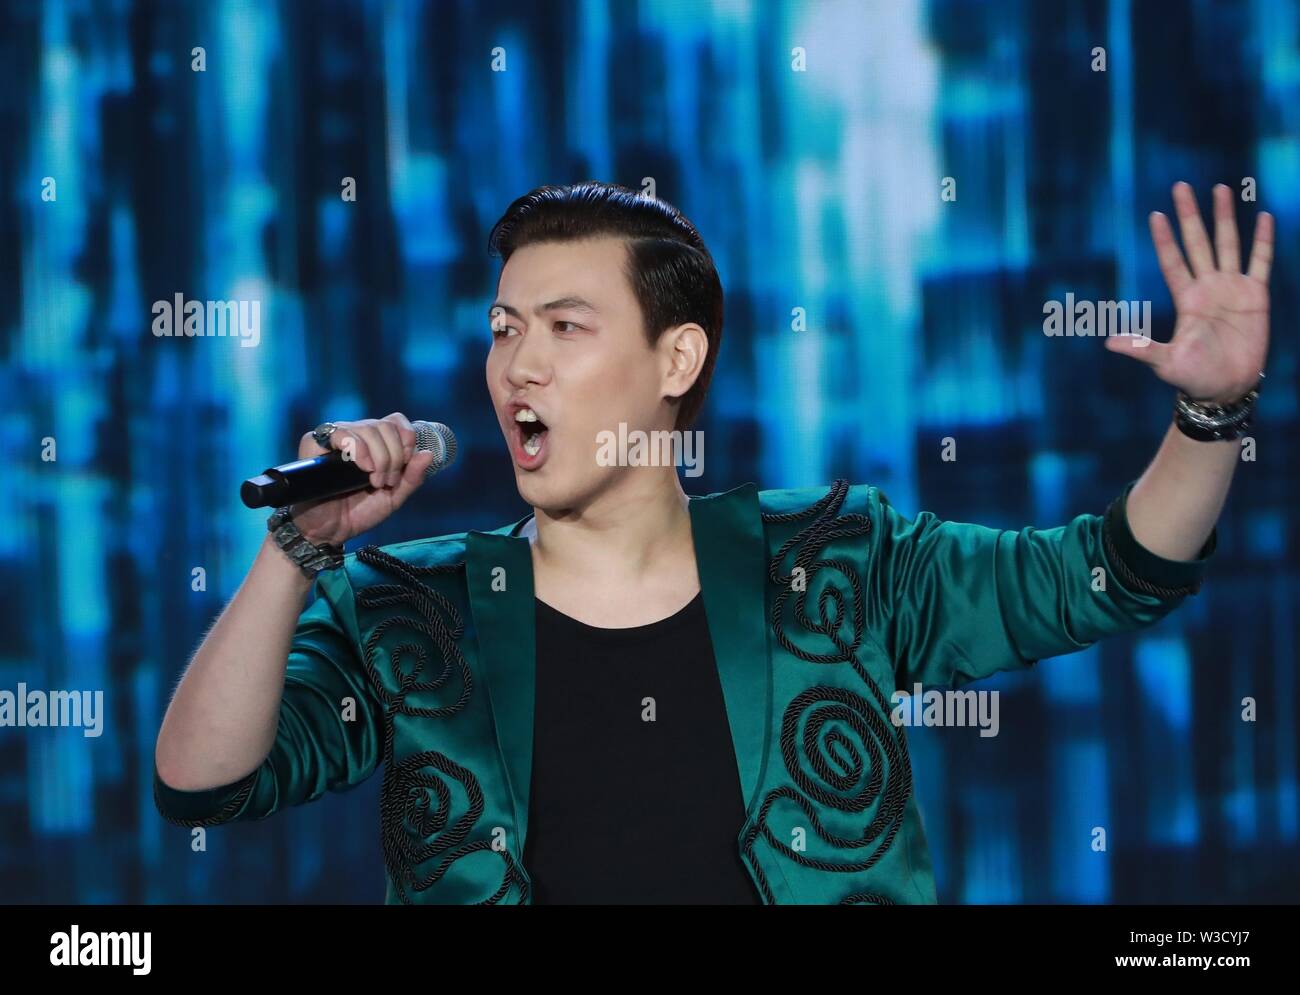 Vitebsk, Bielorussia. 14 Luglio, 2019. Il cantante dal Kazakistan Adilkhan Makin canta durante il pop internazionale artisti Song Contest "Vitebsk-2019' a Vitebsk, a nord-est della Bielorussia, luglio 14, 2019. Pop internazionale artisti Song Contest "Vitebsk-2019" è uno dei principali eventi del XXVIII Bazaar slavo arts festival di Vitebsk. Credito: Zhinkov Henadz/Xinhua/Alamy Live News Foto Stock